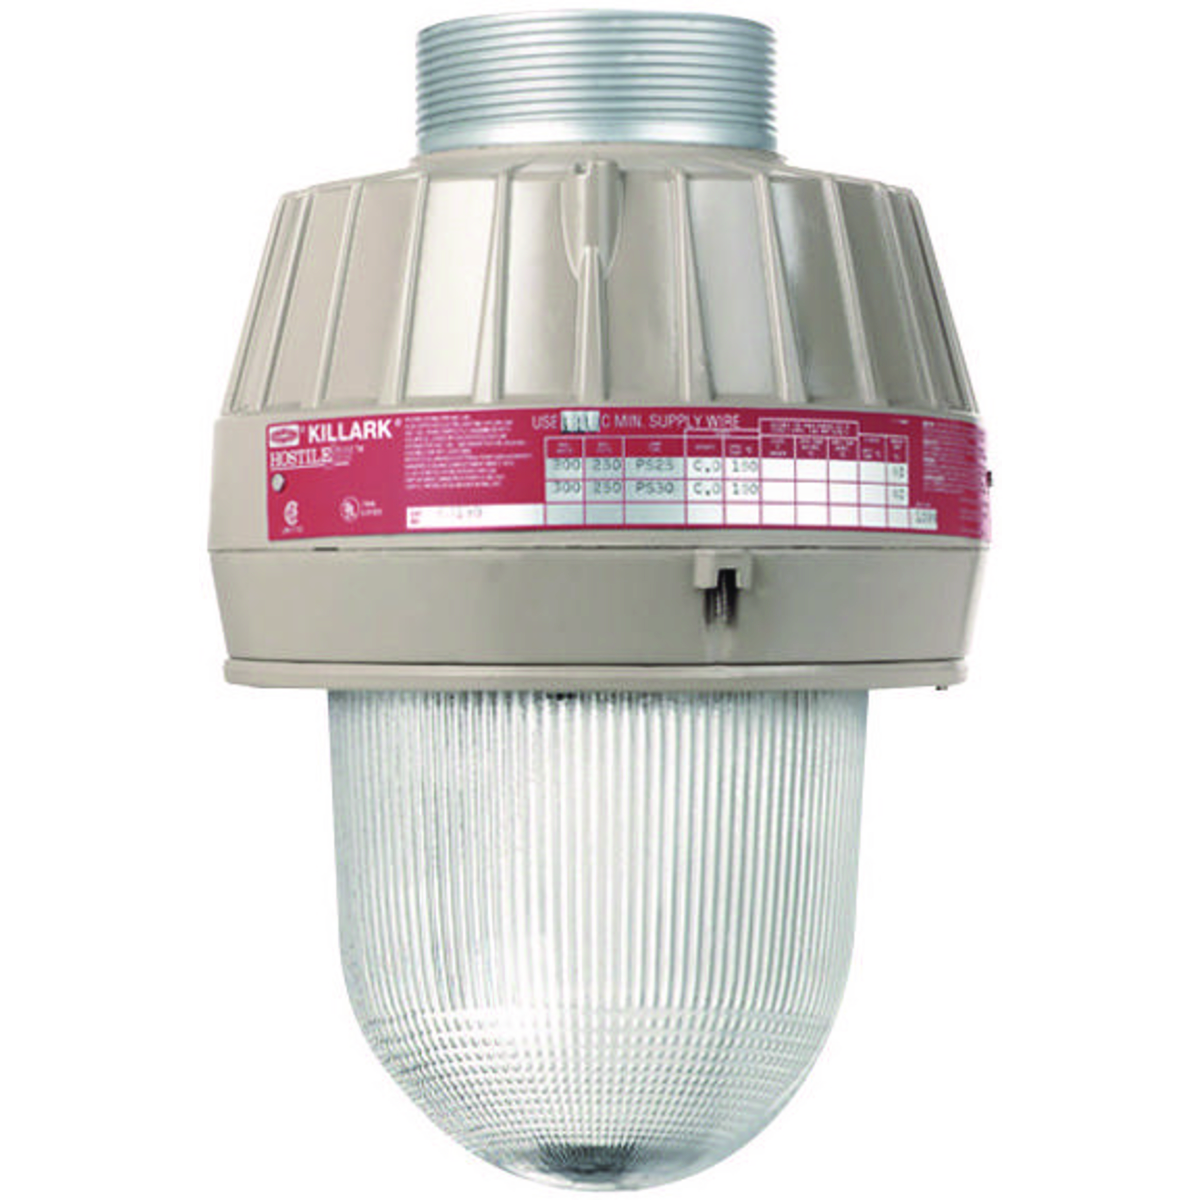 EM SERIES - ALUMINUM 100 WATT MEDIUM BASE METAL HALIDE LIGHT FIXTURE(LAMP NOT INCLUDED) - QUADRI-VOLT (120/208/240/277V) AT 60HZ